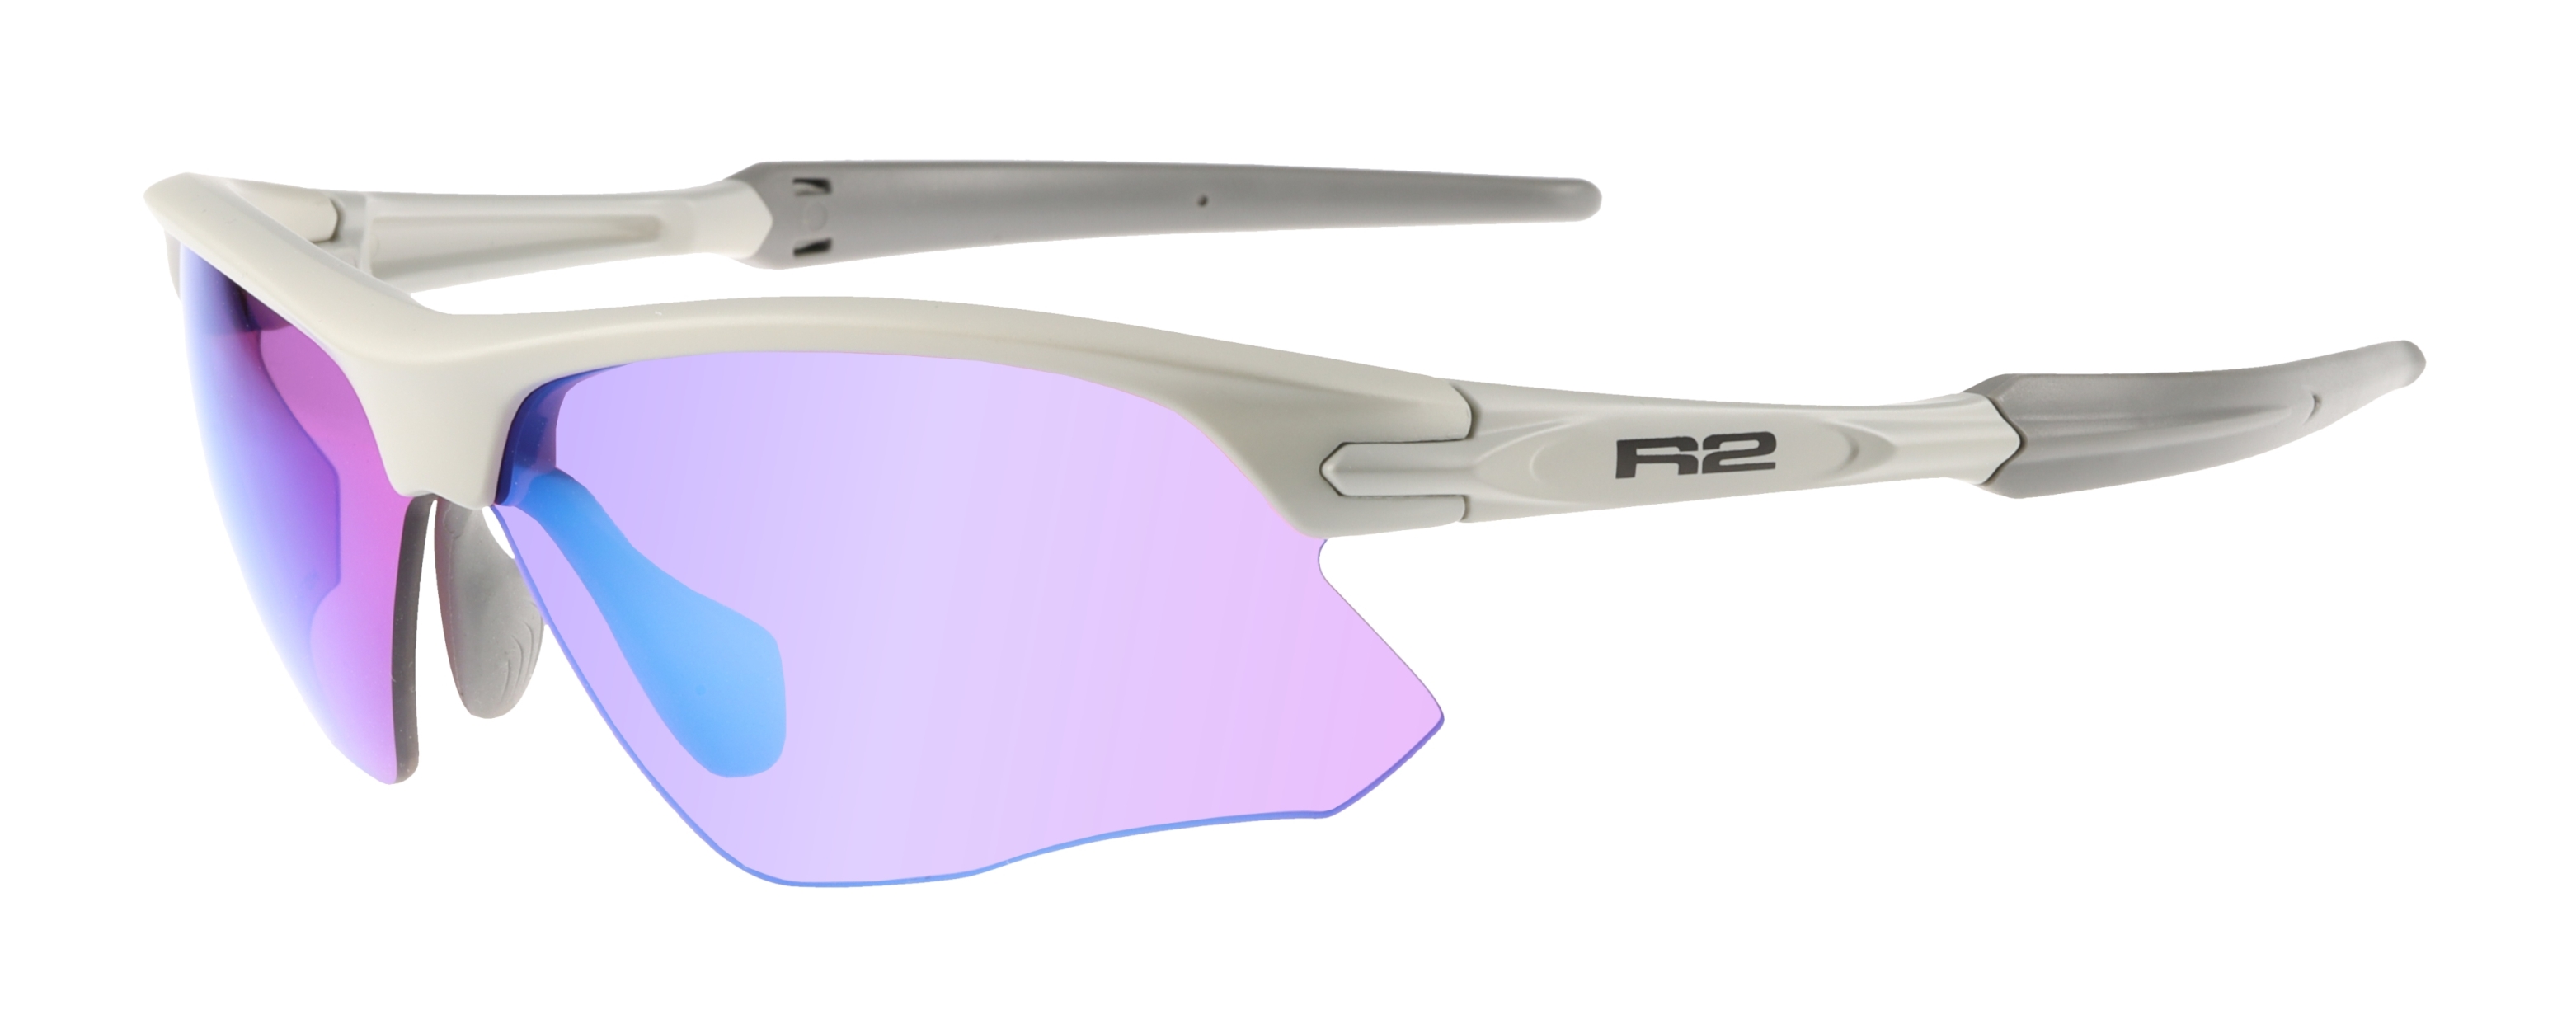 HD sportovní sluneční brýle R2 KICK AT109D - XS